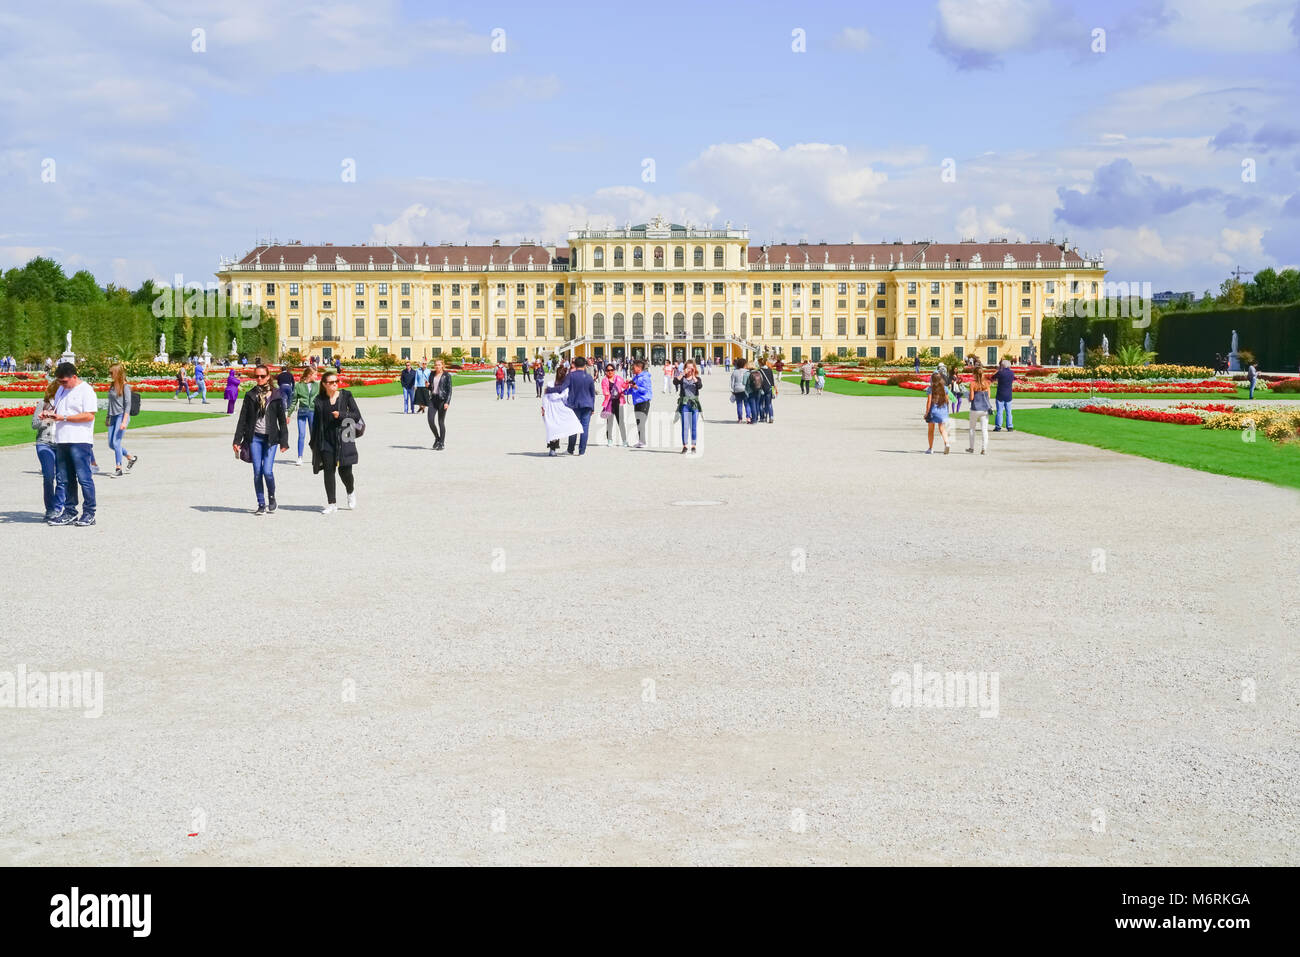 Wien, Österreich - 4 SEPTEMBER 2017; Touristen auf Platz vor der barocken Architektur Schloss Schönbrunn, Hofburg, einer der wichtigsten touristischen Attraktion Stockfoto